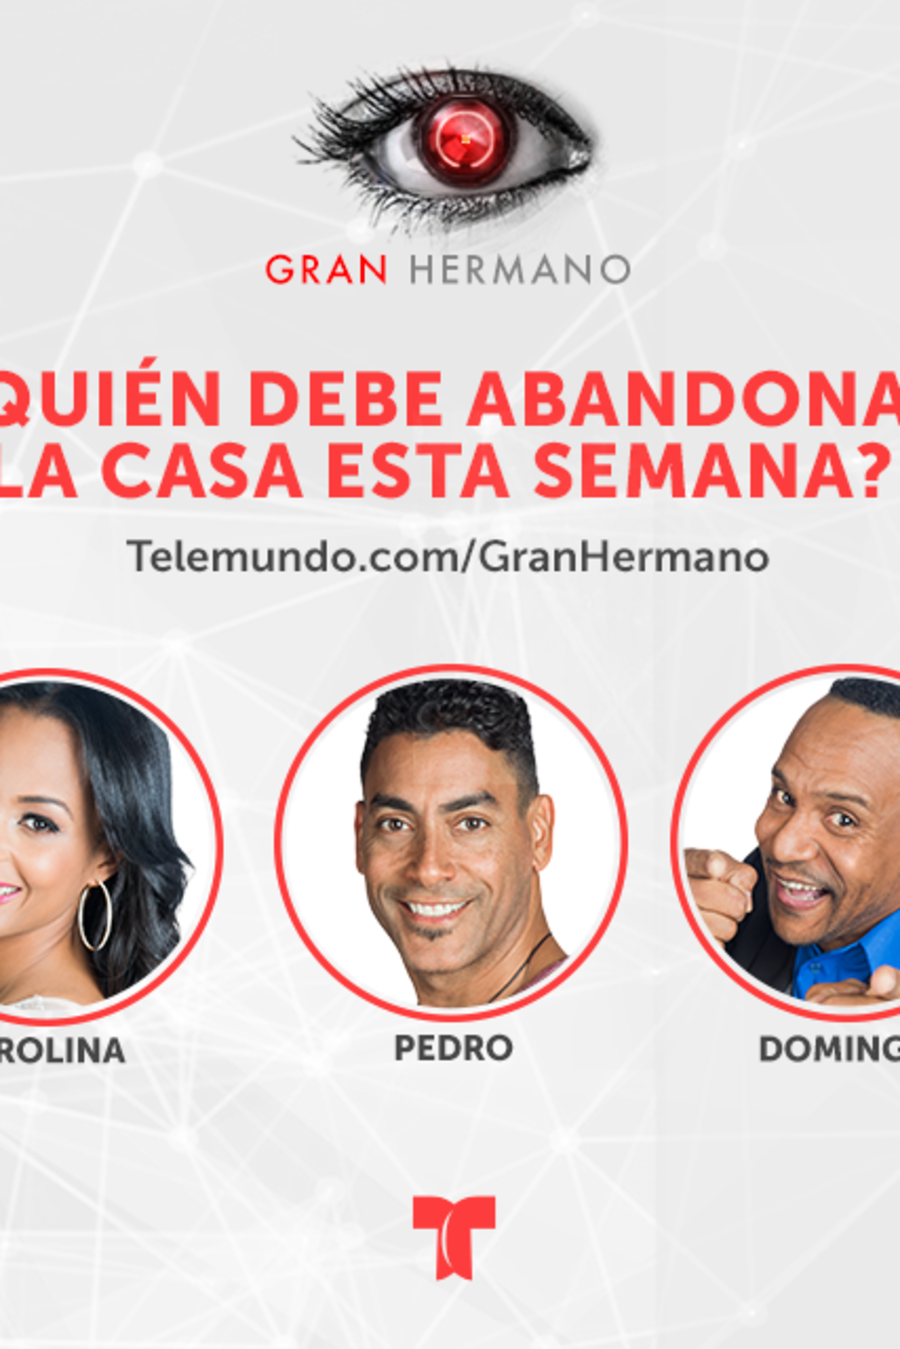 Carolina, Pedro y Domingo, grafica nominados semana dos en Gran Hermano